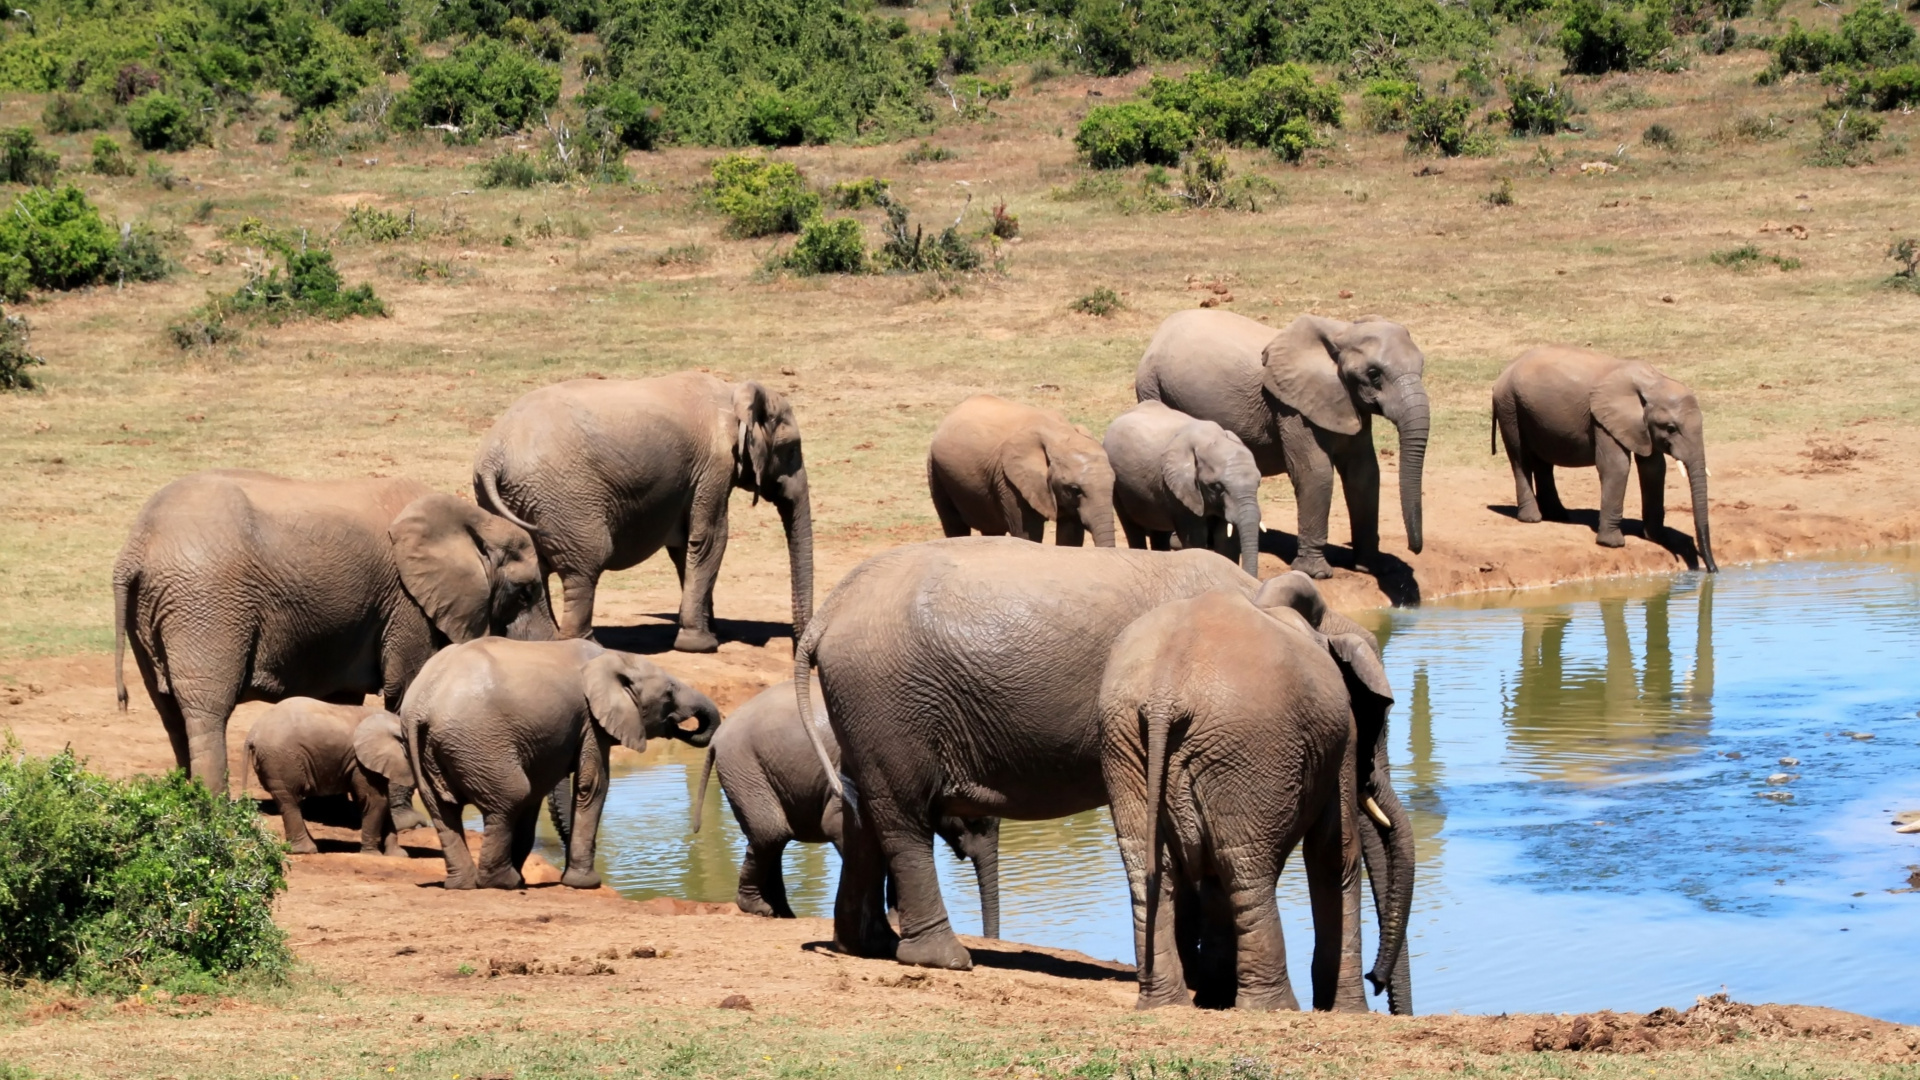 陆地动物, 野生动物, 大象和猛犸象, 牛群, 非洲象 壁纸 1920x1080 允许